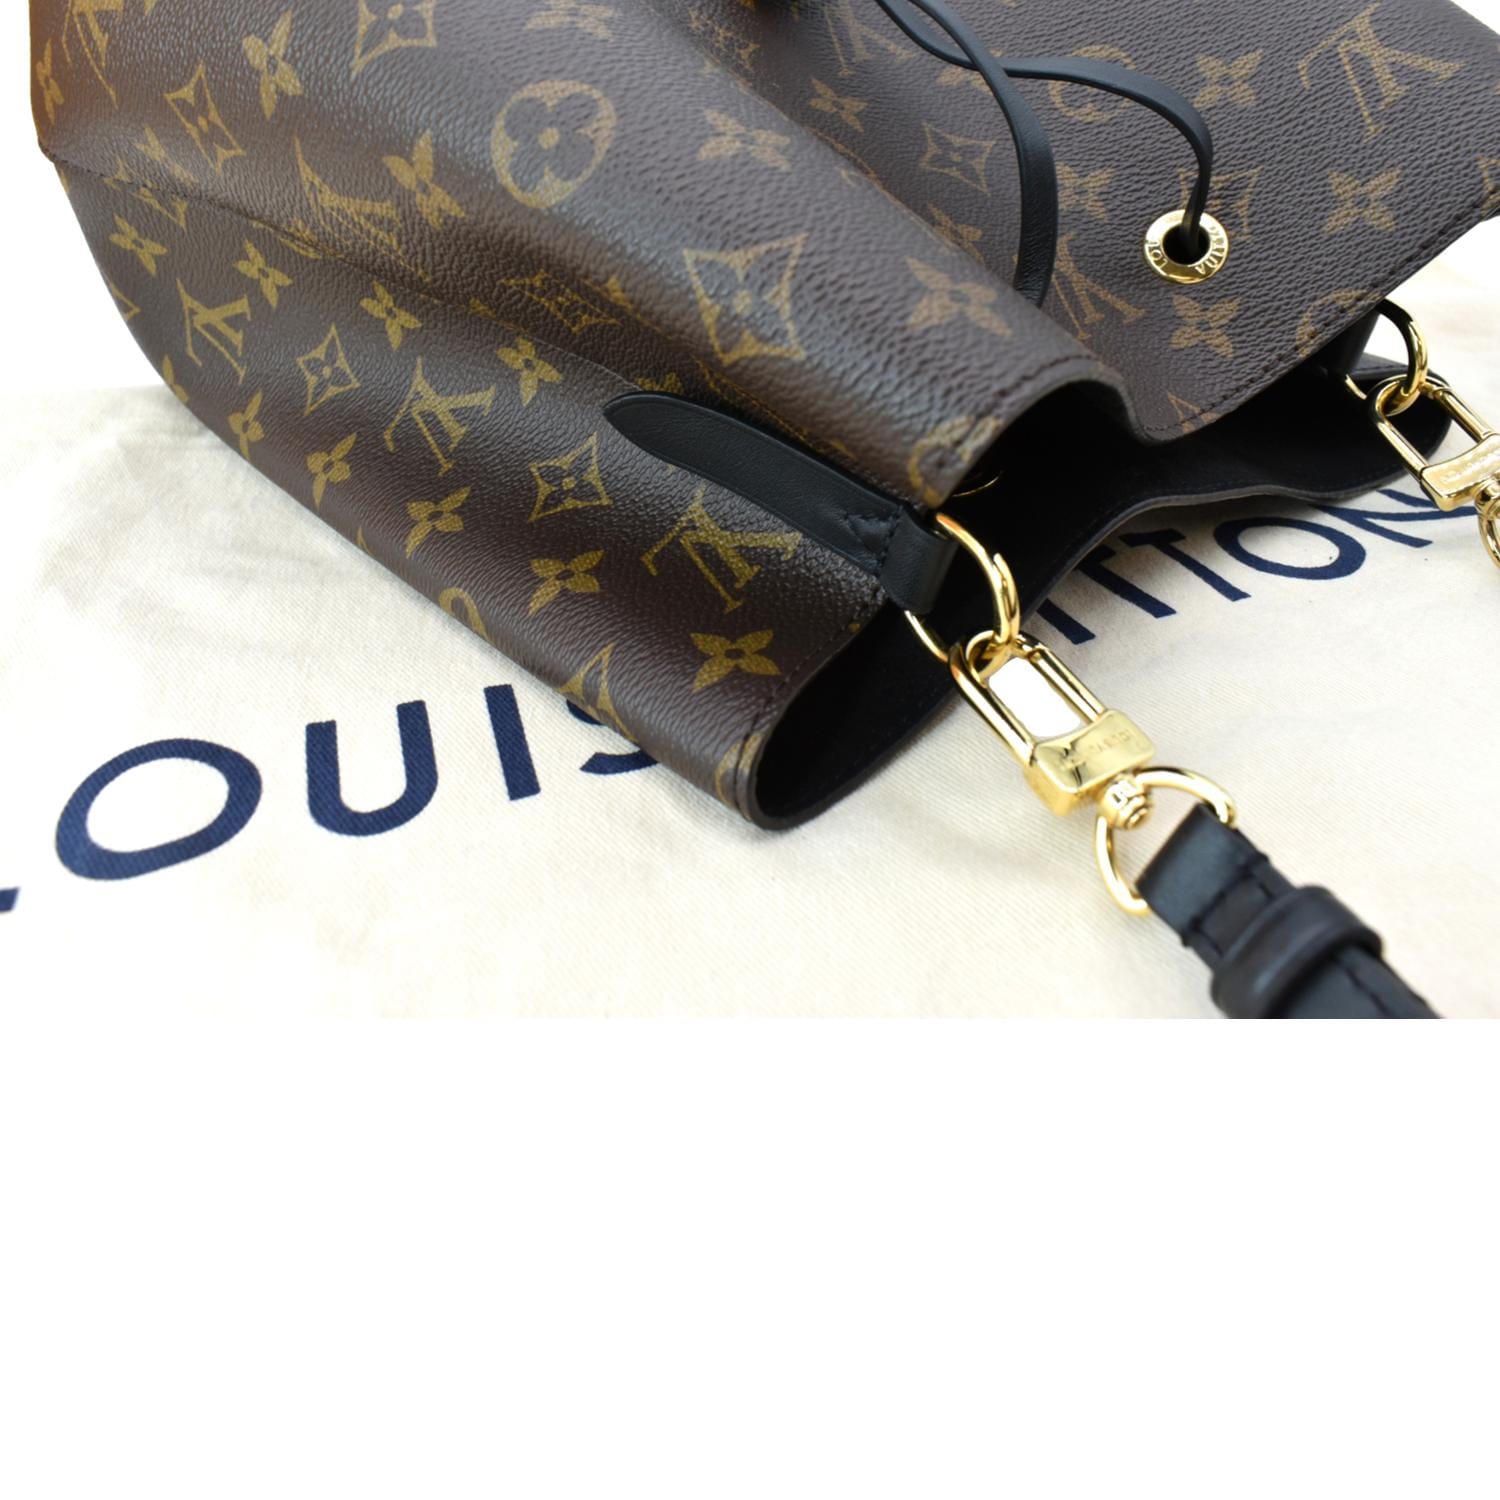 Louis+Vuitton+NeoNoe+Handbag+MM+Brown+Canvas for sale online